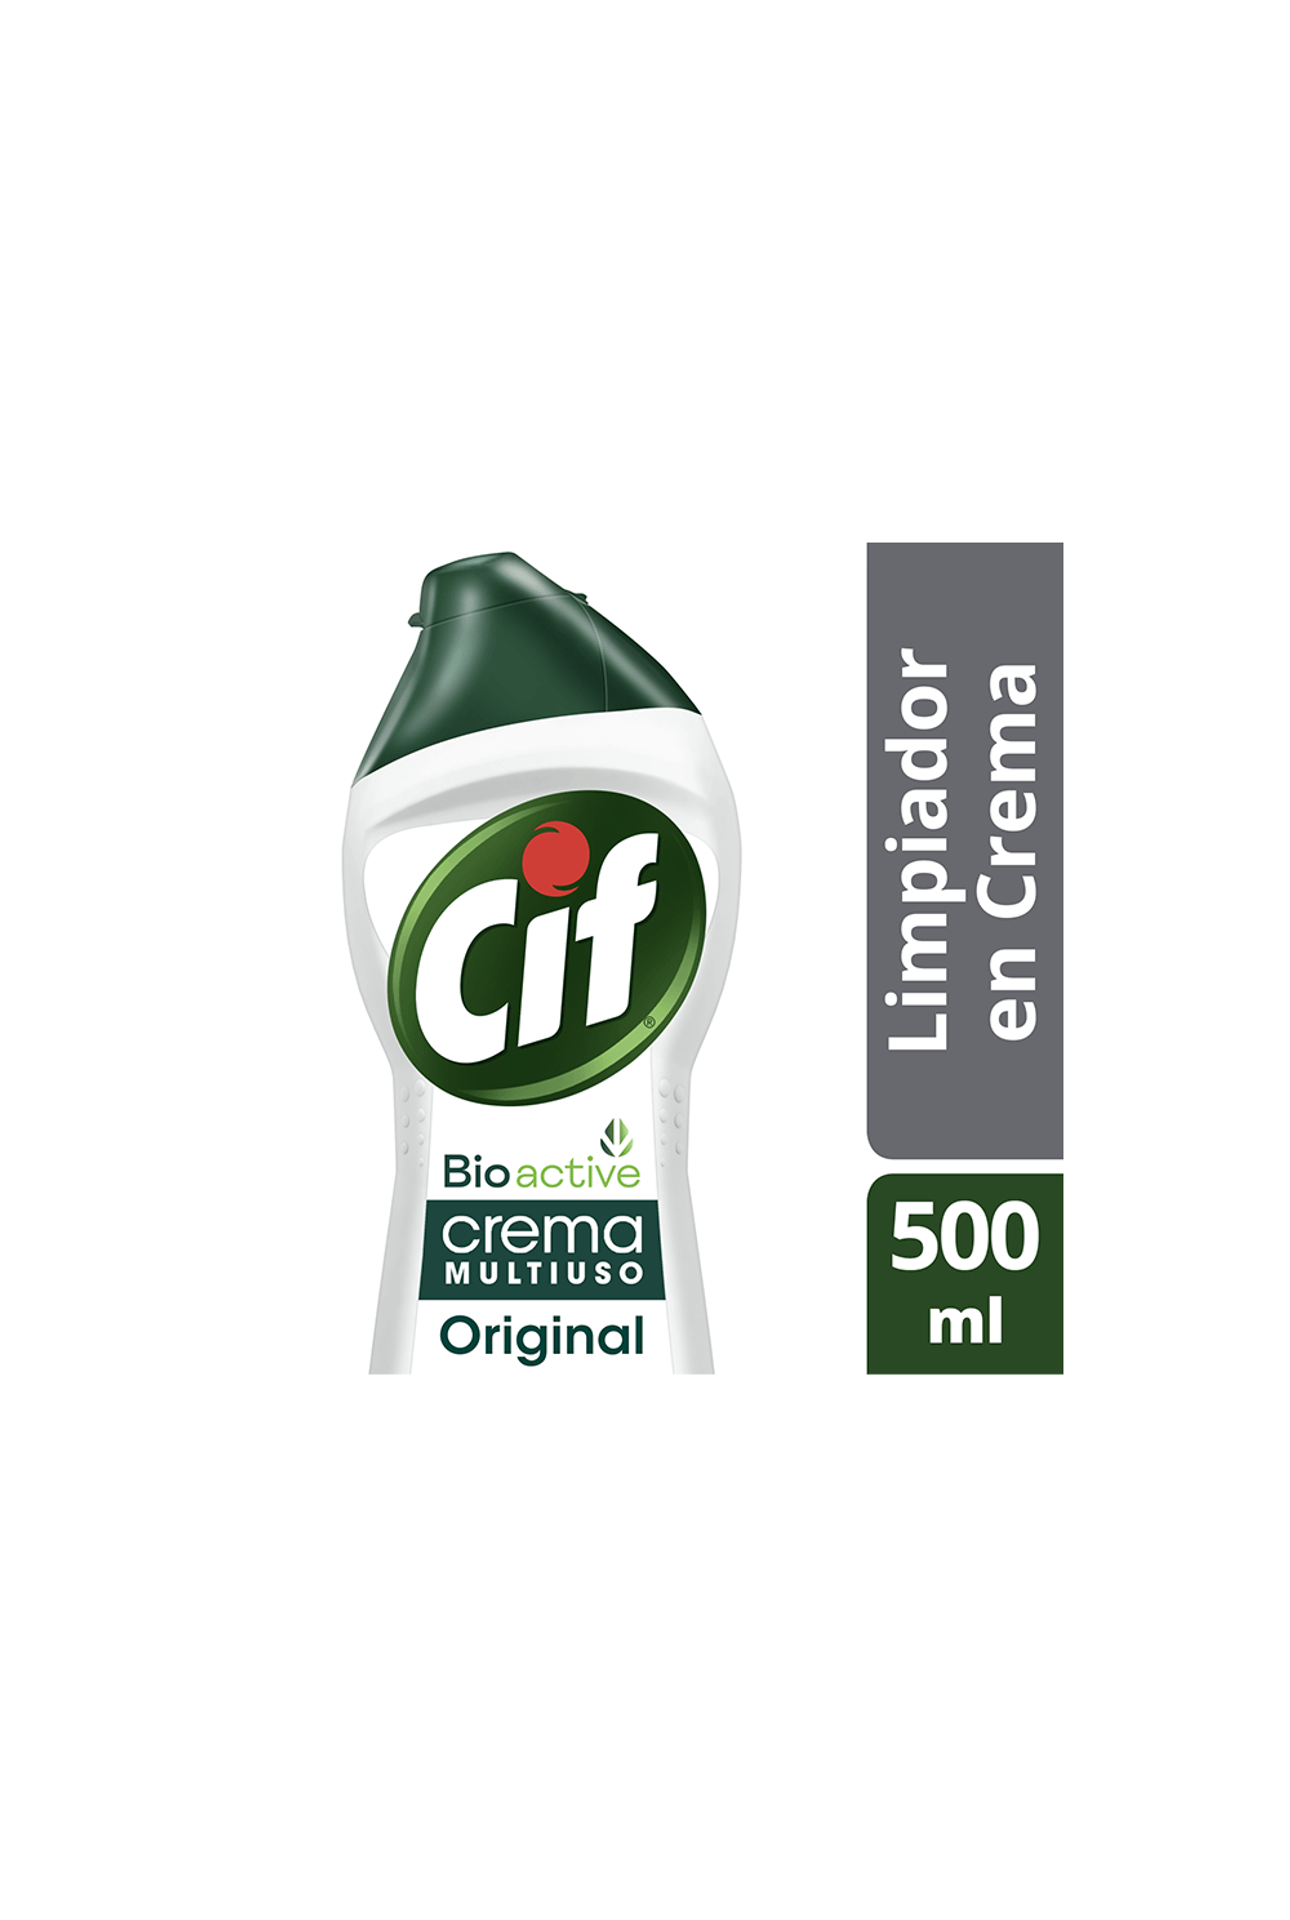 Liqui - Cif Crema Bioactive Limpiador Original 750gr